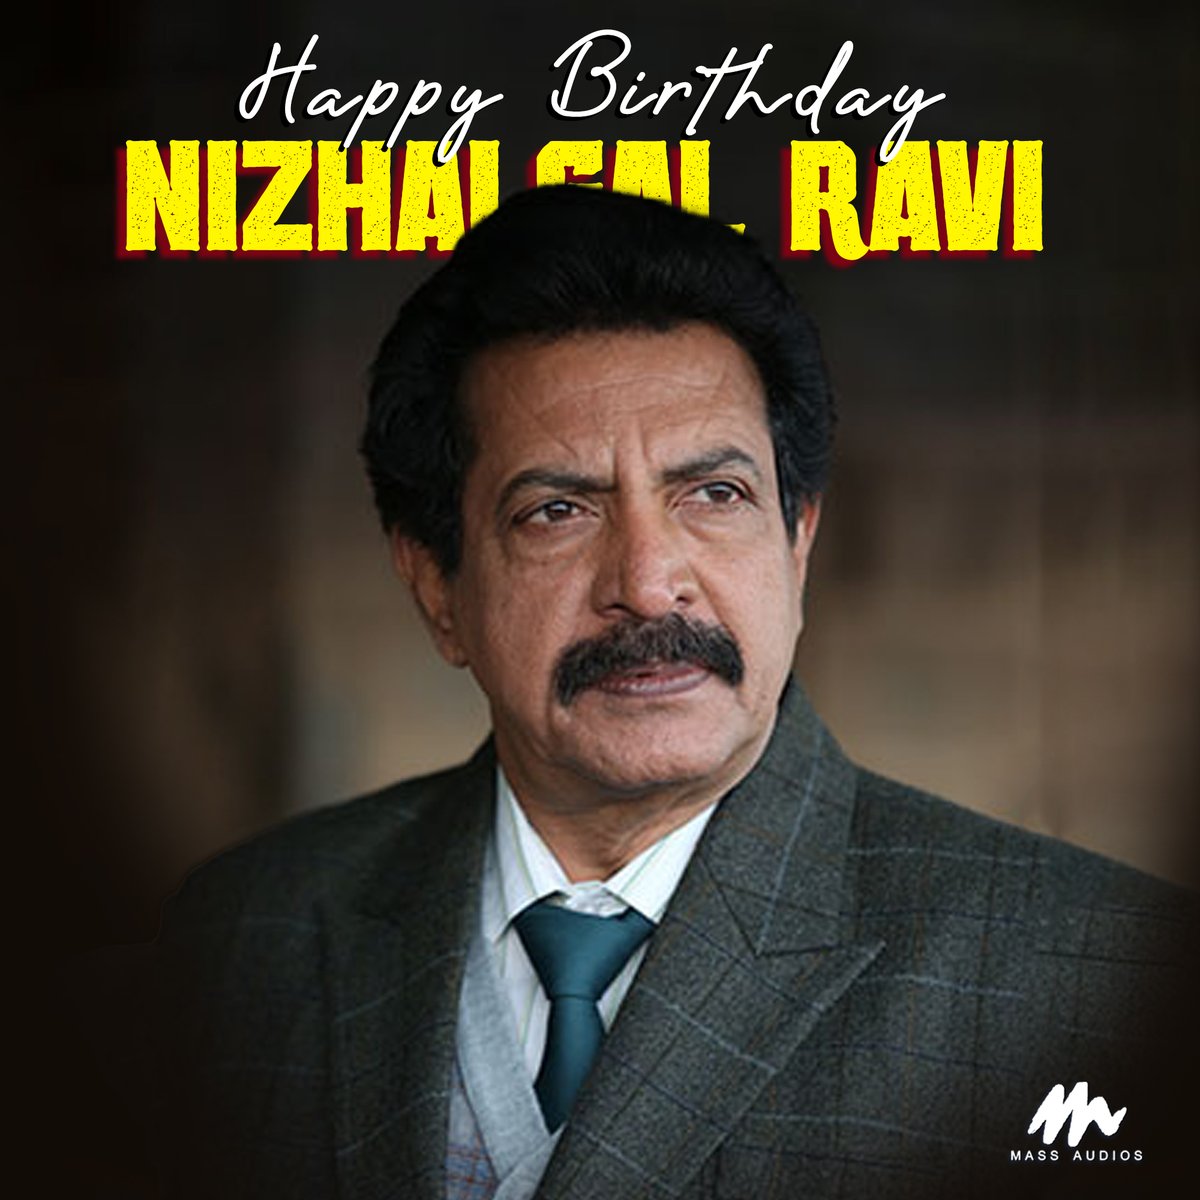 Wishing #NizhalgalRavi A Very Happy Birthday
#happybirthdayNizhalgalRavi #hbdNizhalgalRavi #massaudios